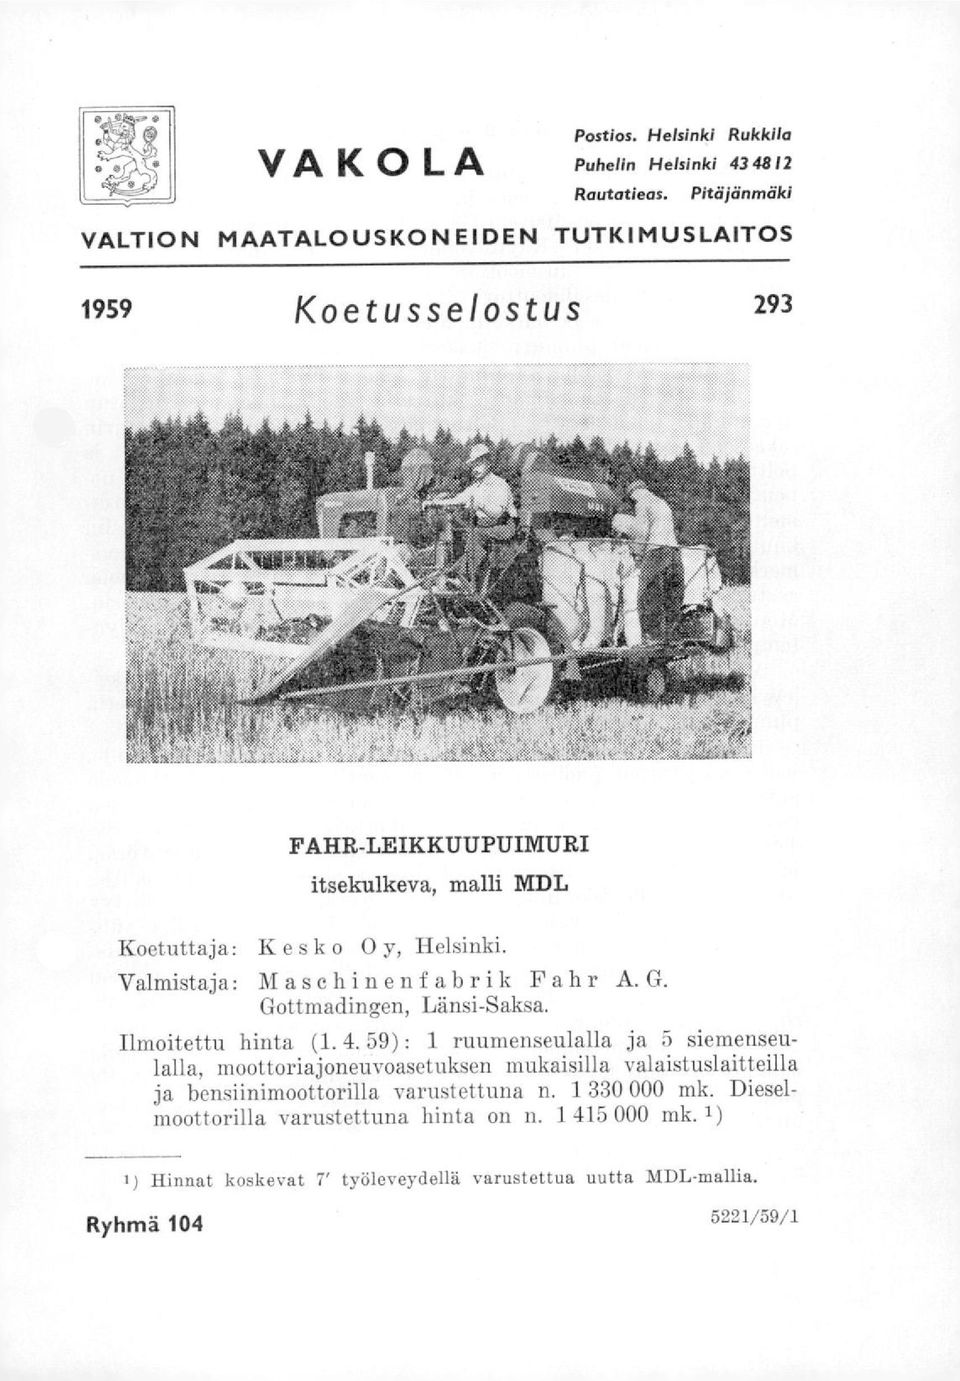 Valmistaja: Maschinenfabrik Fahr A.G. Gottmadingen, Länsi-Saksa. Ilmoitettu hinta (1. 4.